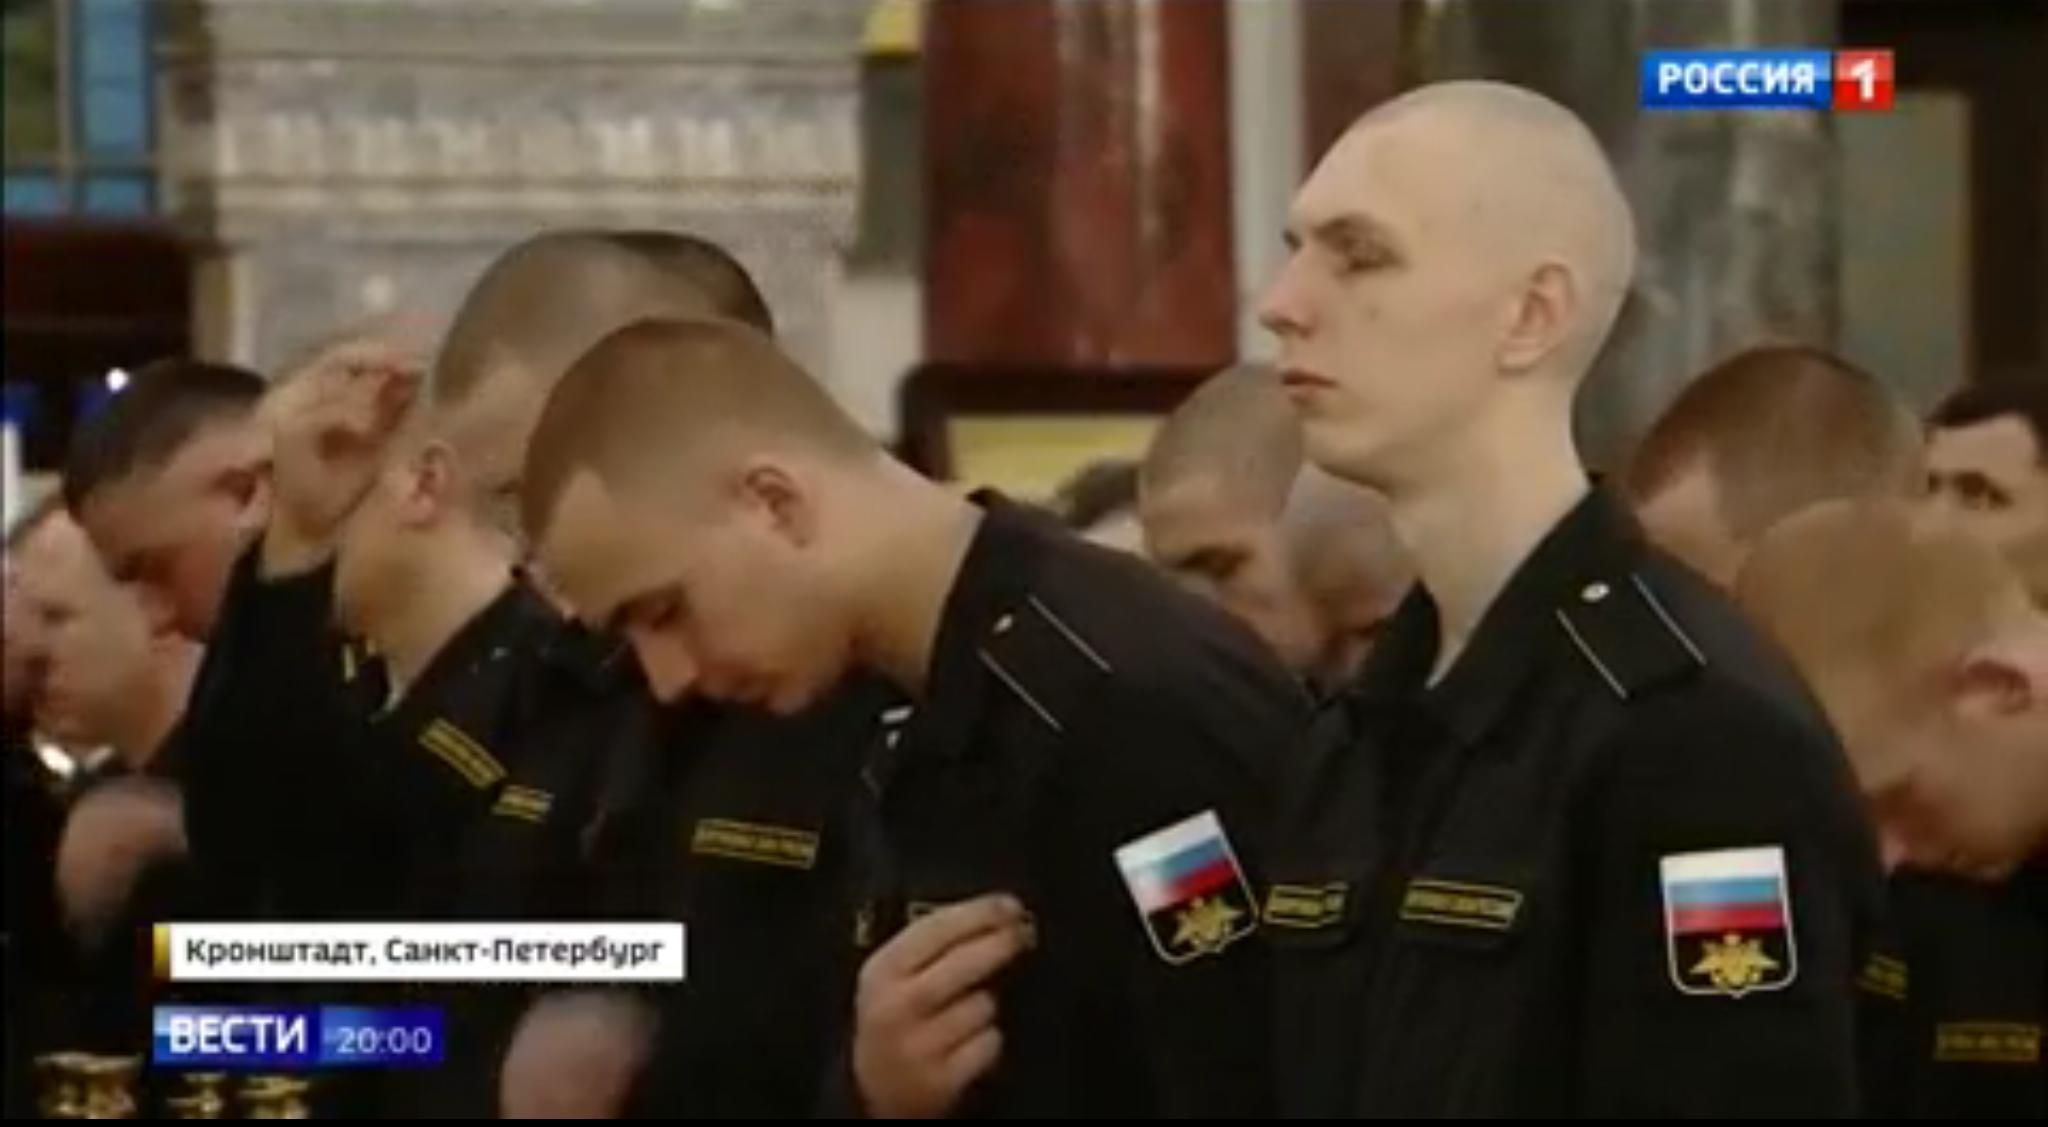 Młodzi żołnierze krótko ostrzyżeni żegnają się i kłaniają ikonom w cerkwi